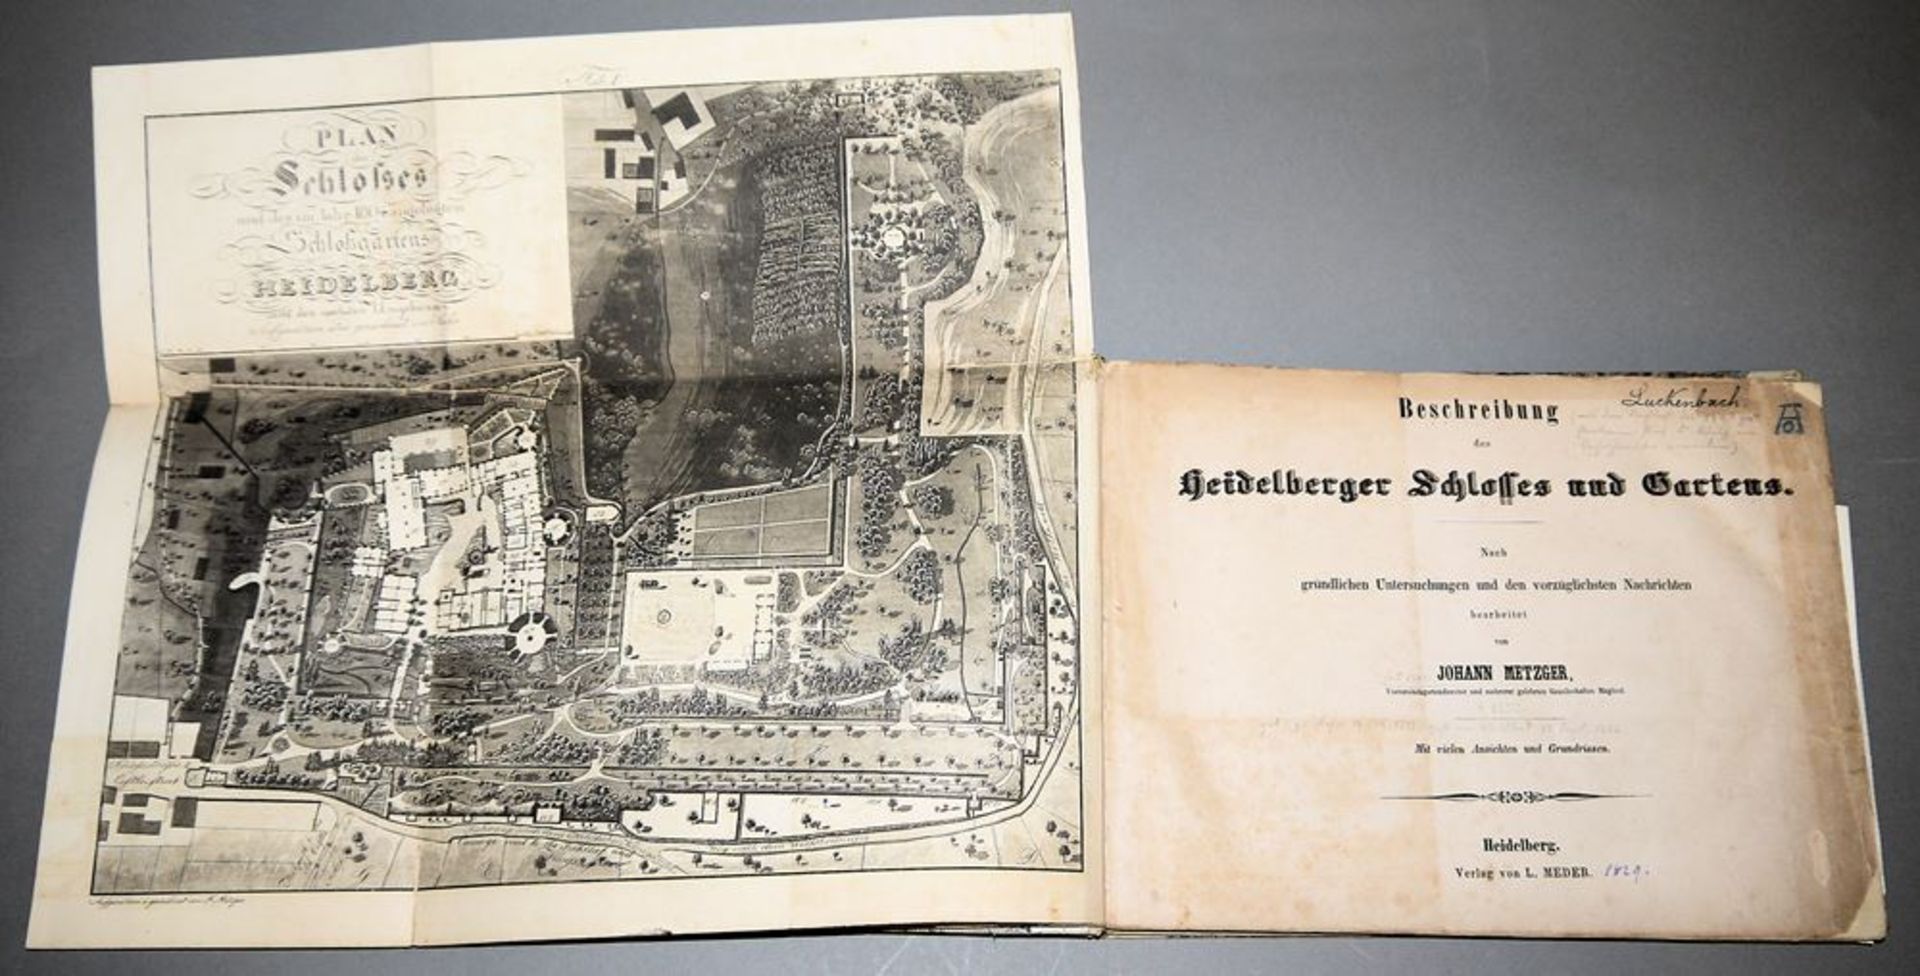 Beschreibung des Heidelberger Schlosses und Gartens mit 24 Aquatinta-Tafeln, Jo